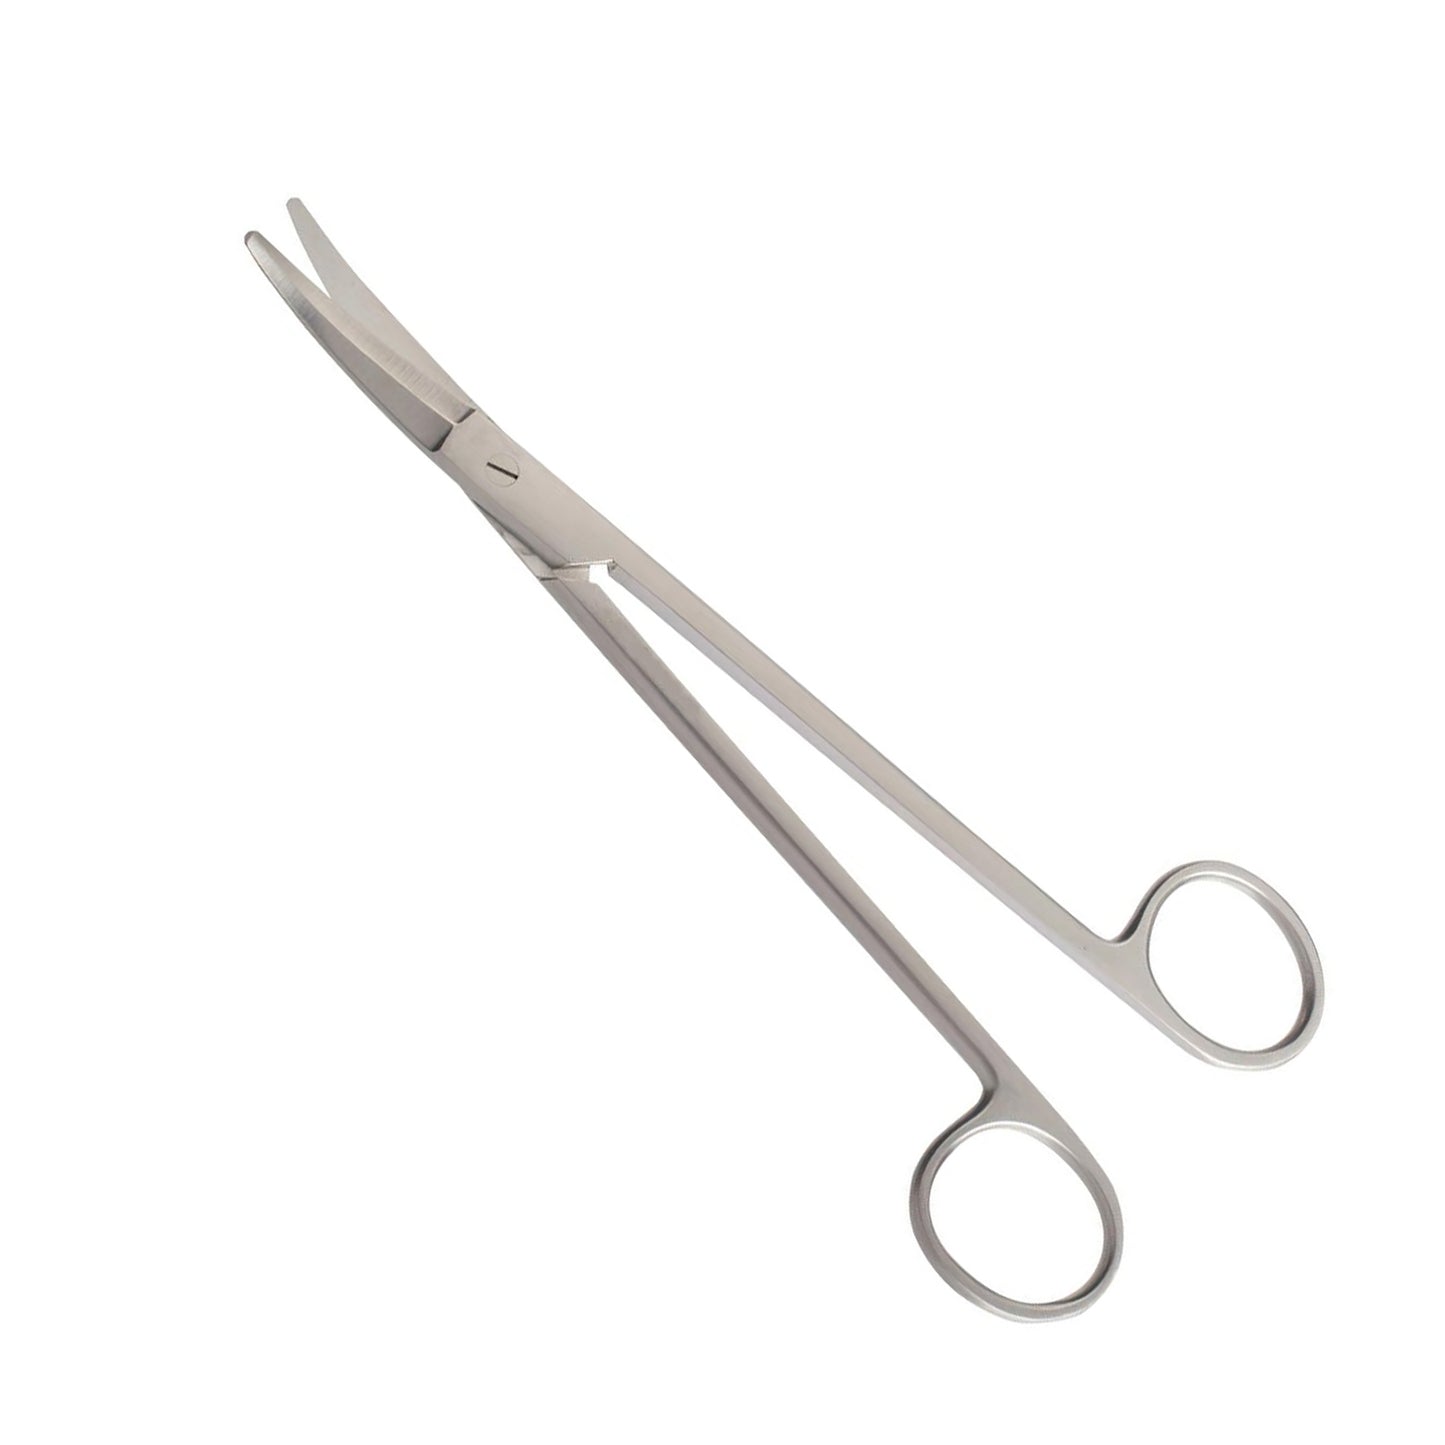 Potts-smith Dissecting Scissors